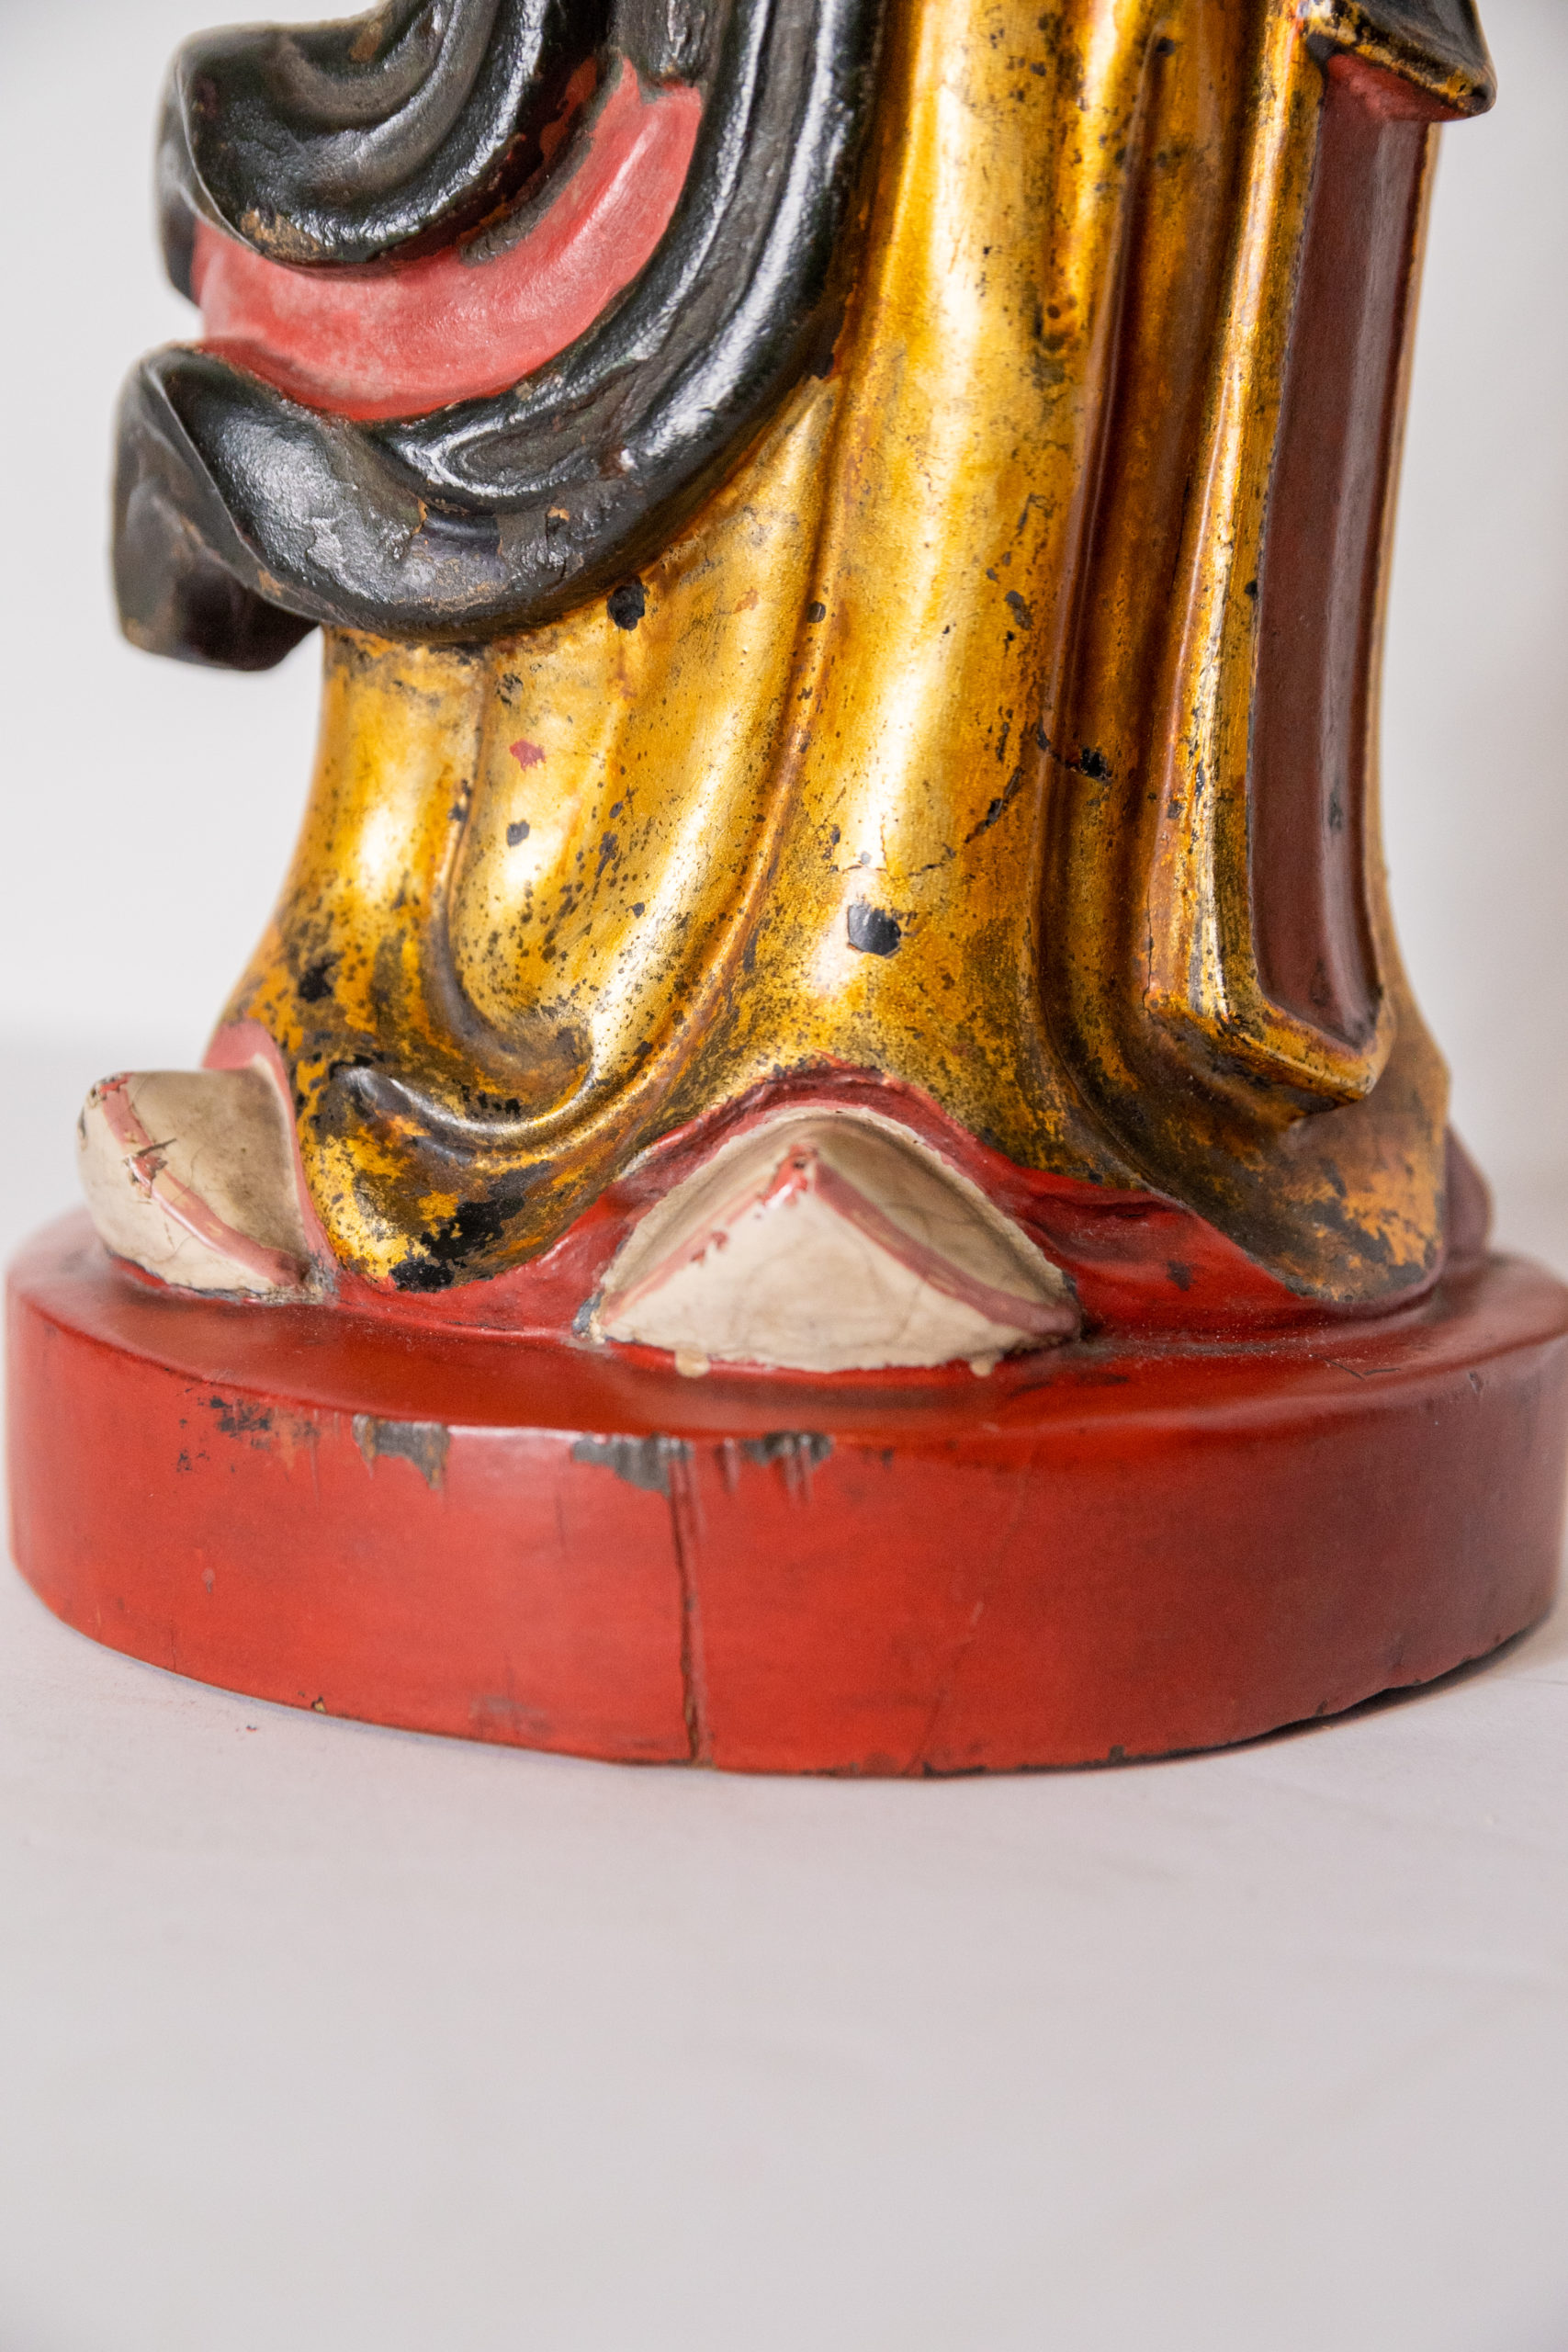 Aurore-morisse-acheteur-affaire-conclue-antiquaire-paris-liège-art-expertise-estimation-ojet-antiquités-sculpture-bois-moine-taoiste-XIXe-bois-doré-tibet-vietnam11-2